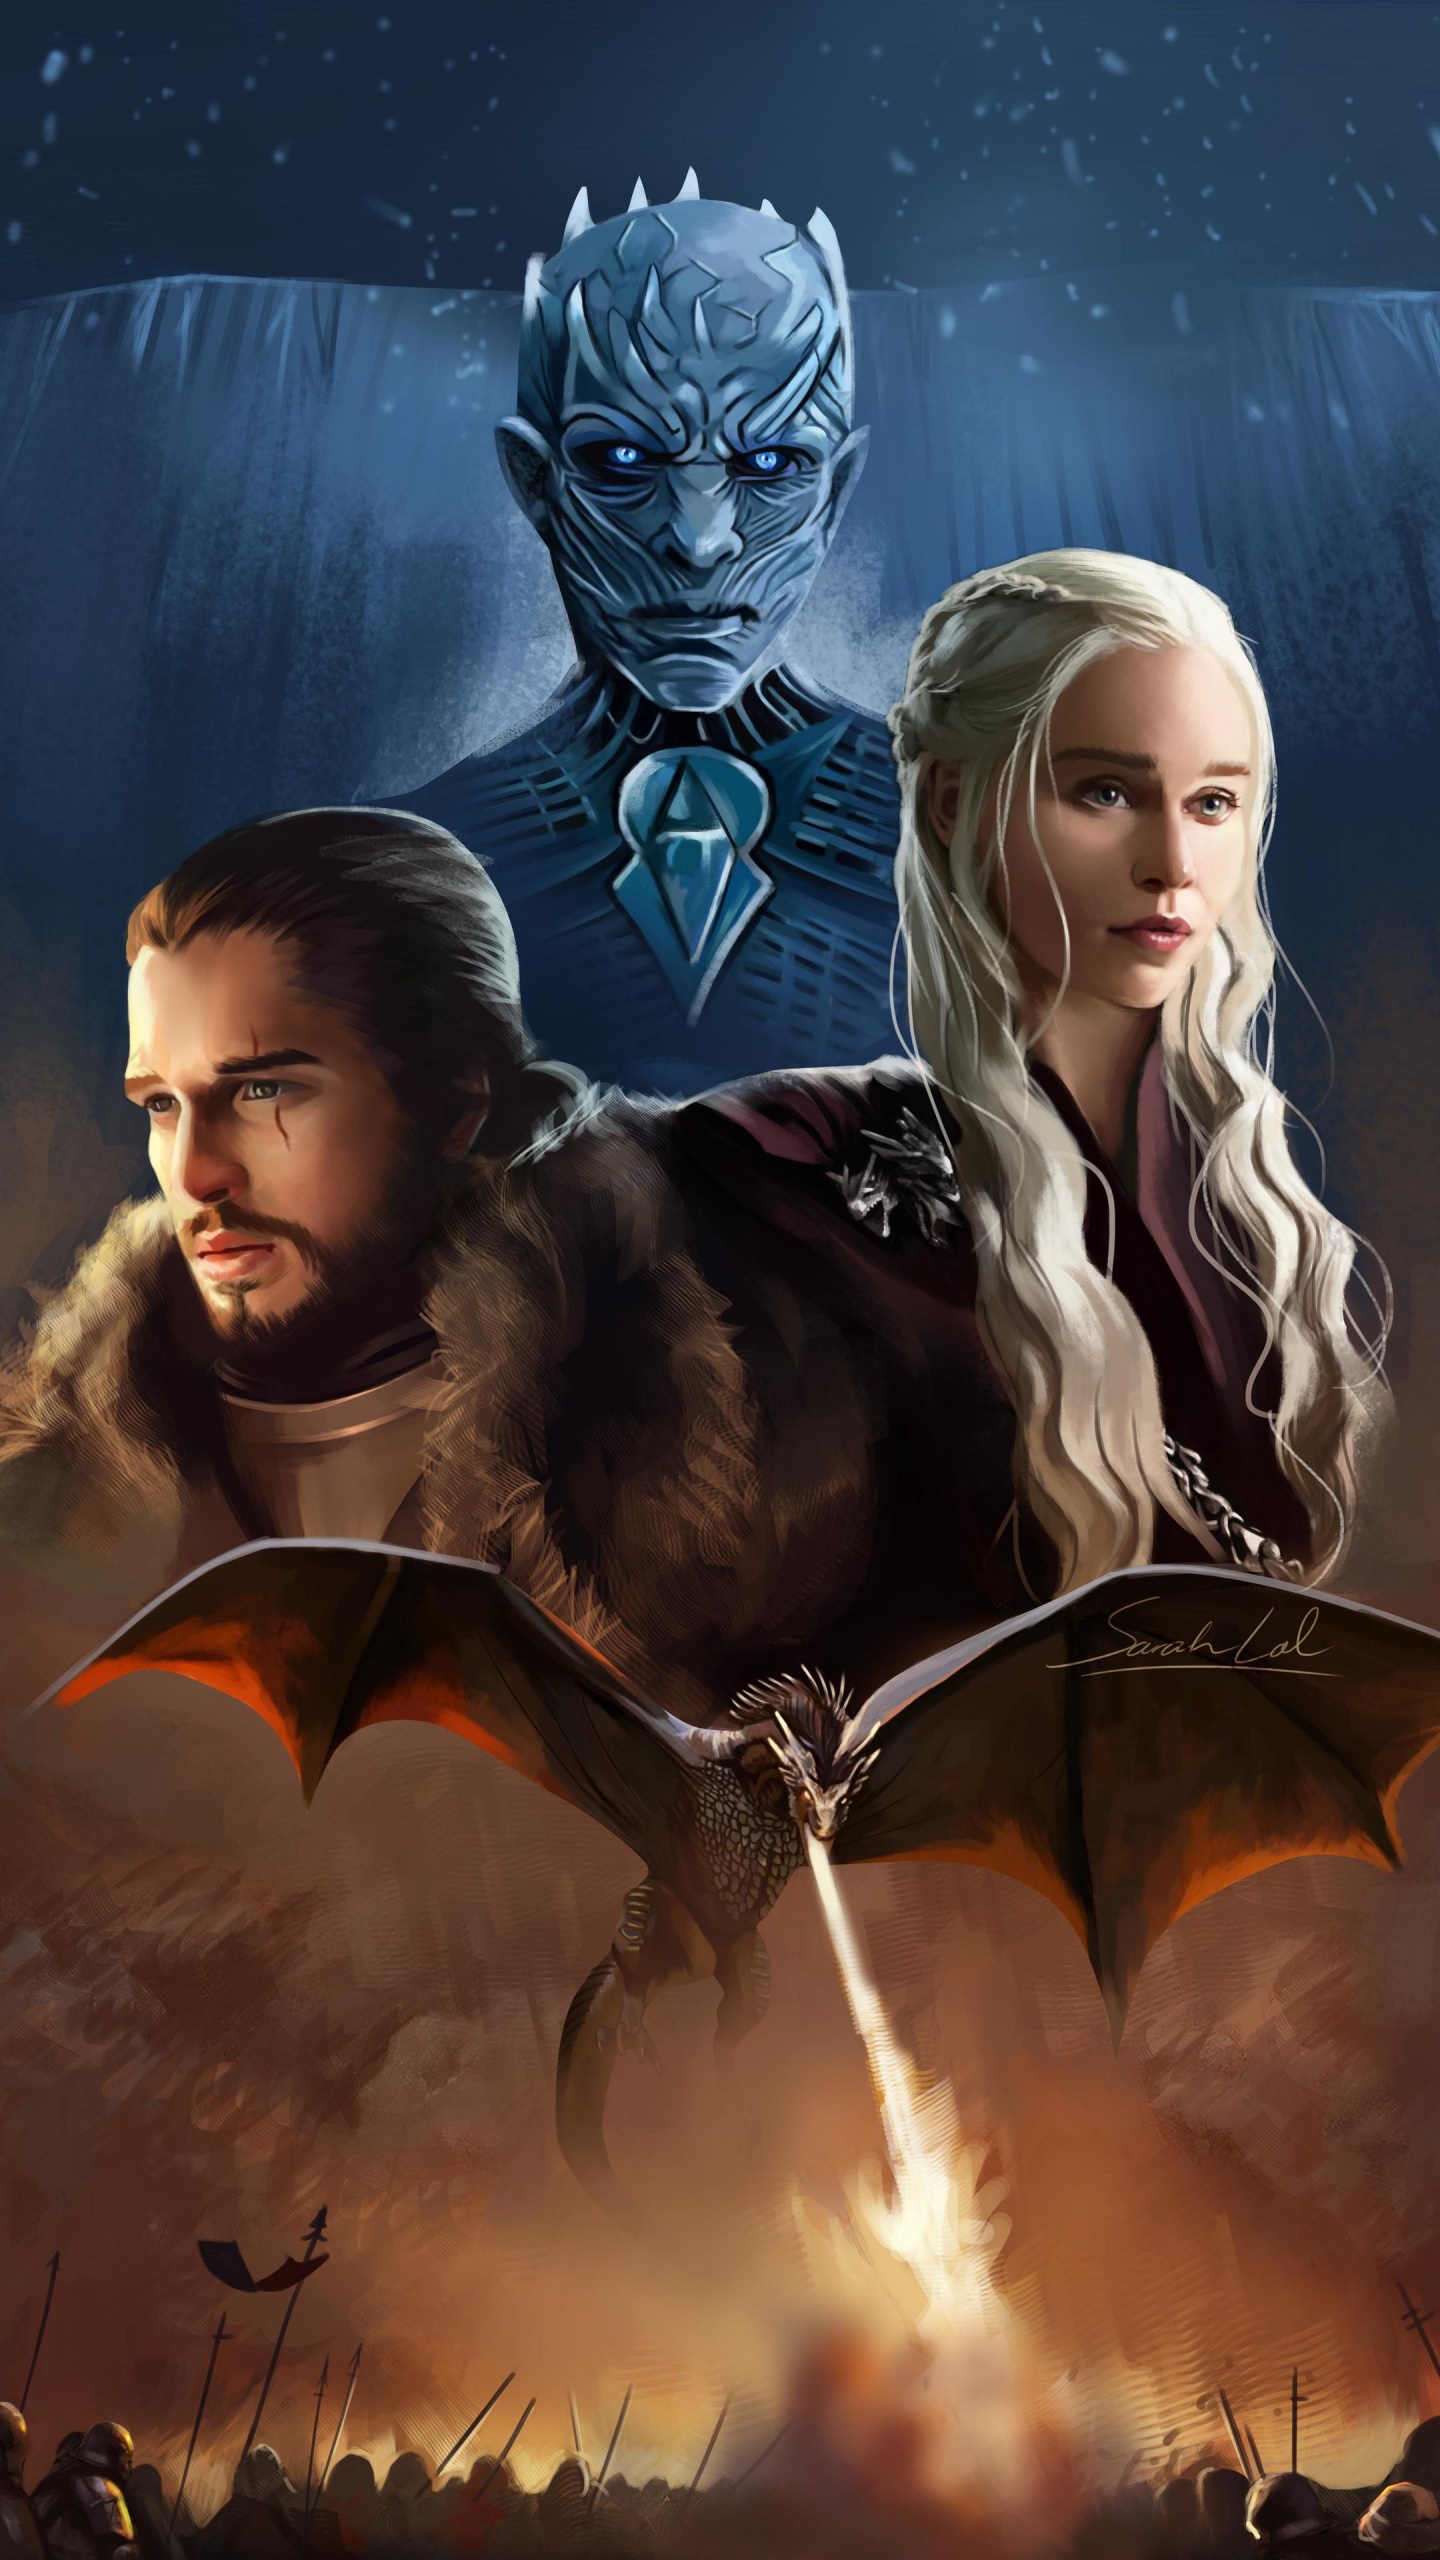 Spiel Der Throne, Game of Thrones-Fanart, Game of Thrones, Daenerys Targaryen, Jon Schnee. Wallpaper in 1440x2560 Resolution